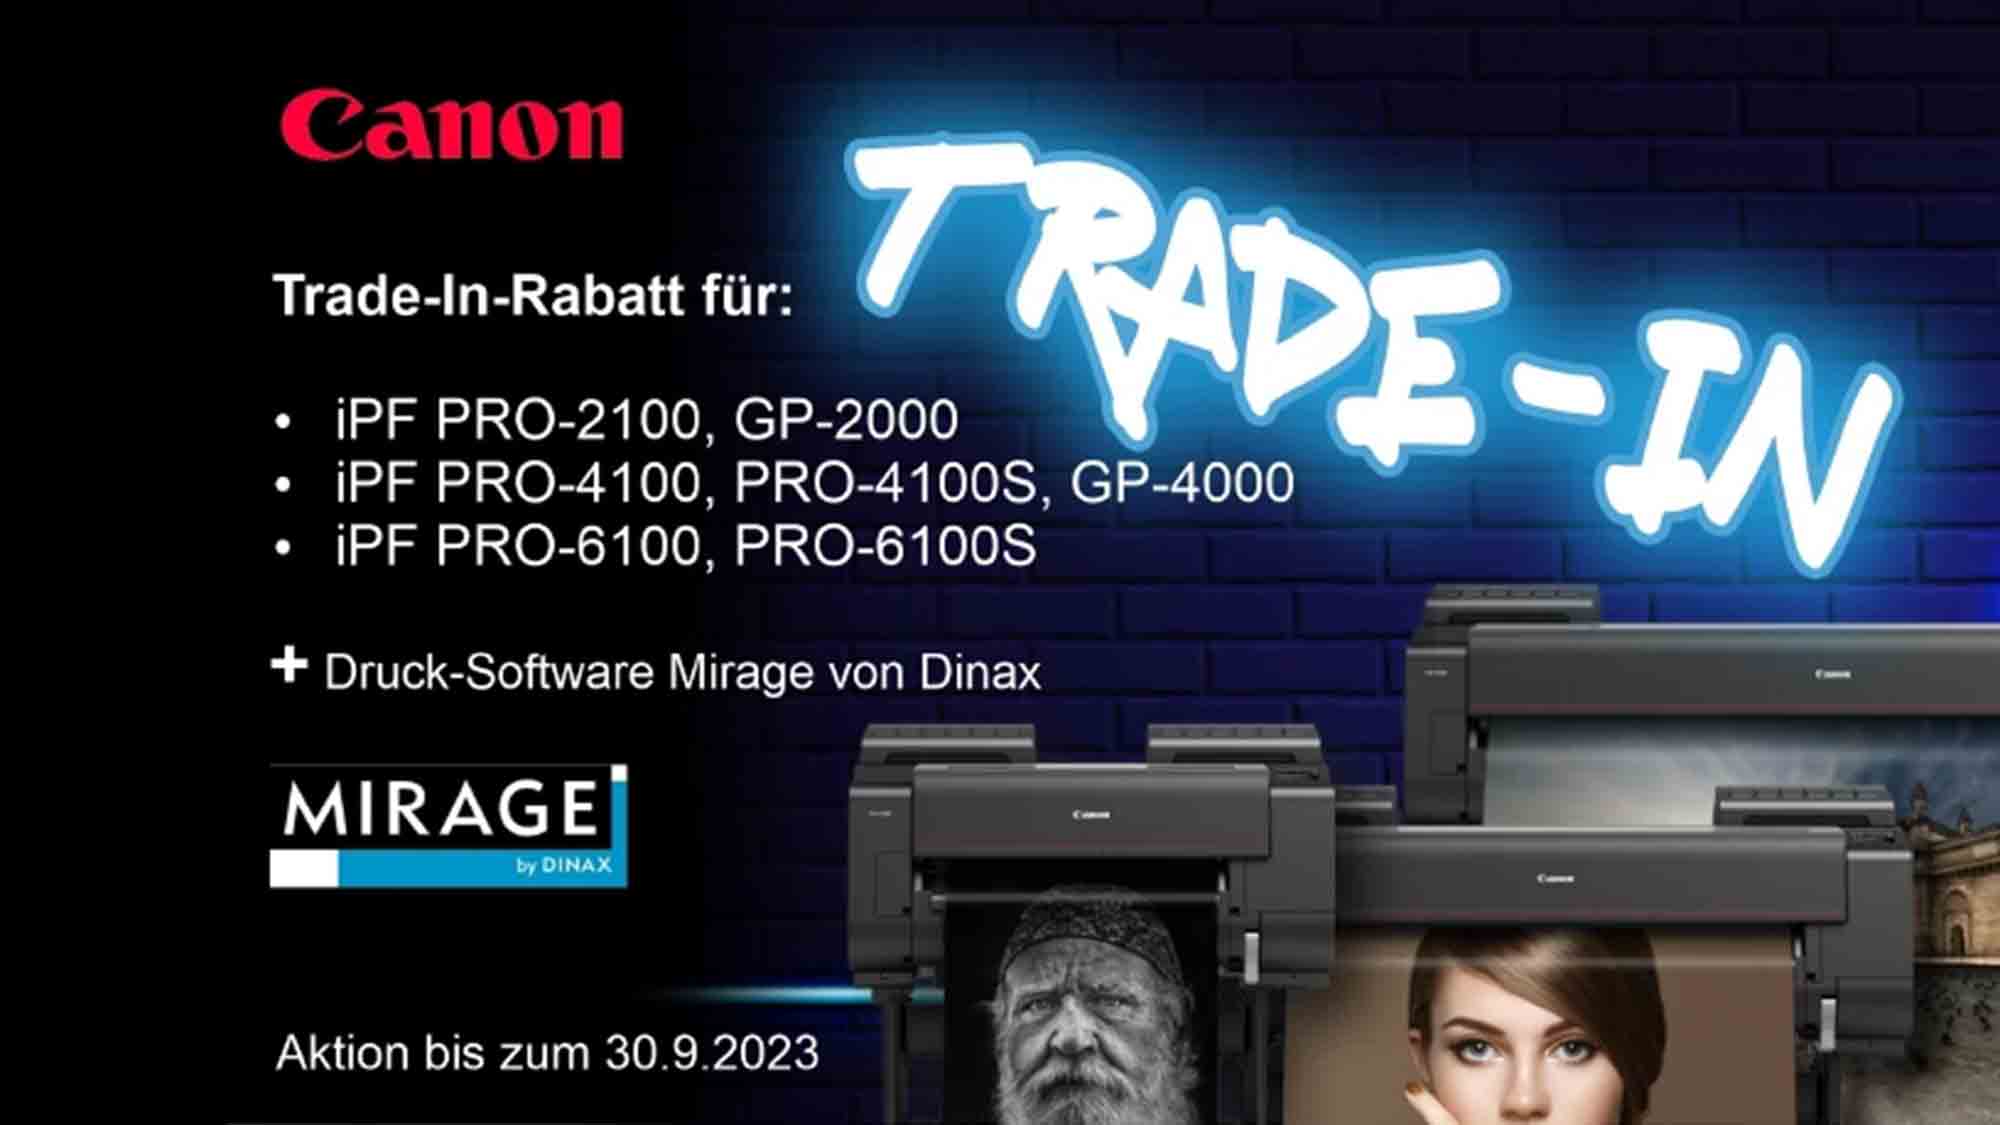 Photolux: Canon geht mit aggressiven Angebot den Markt für Fotodrucker an